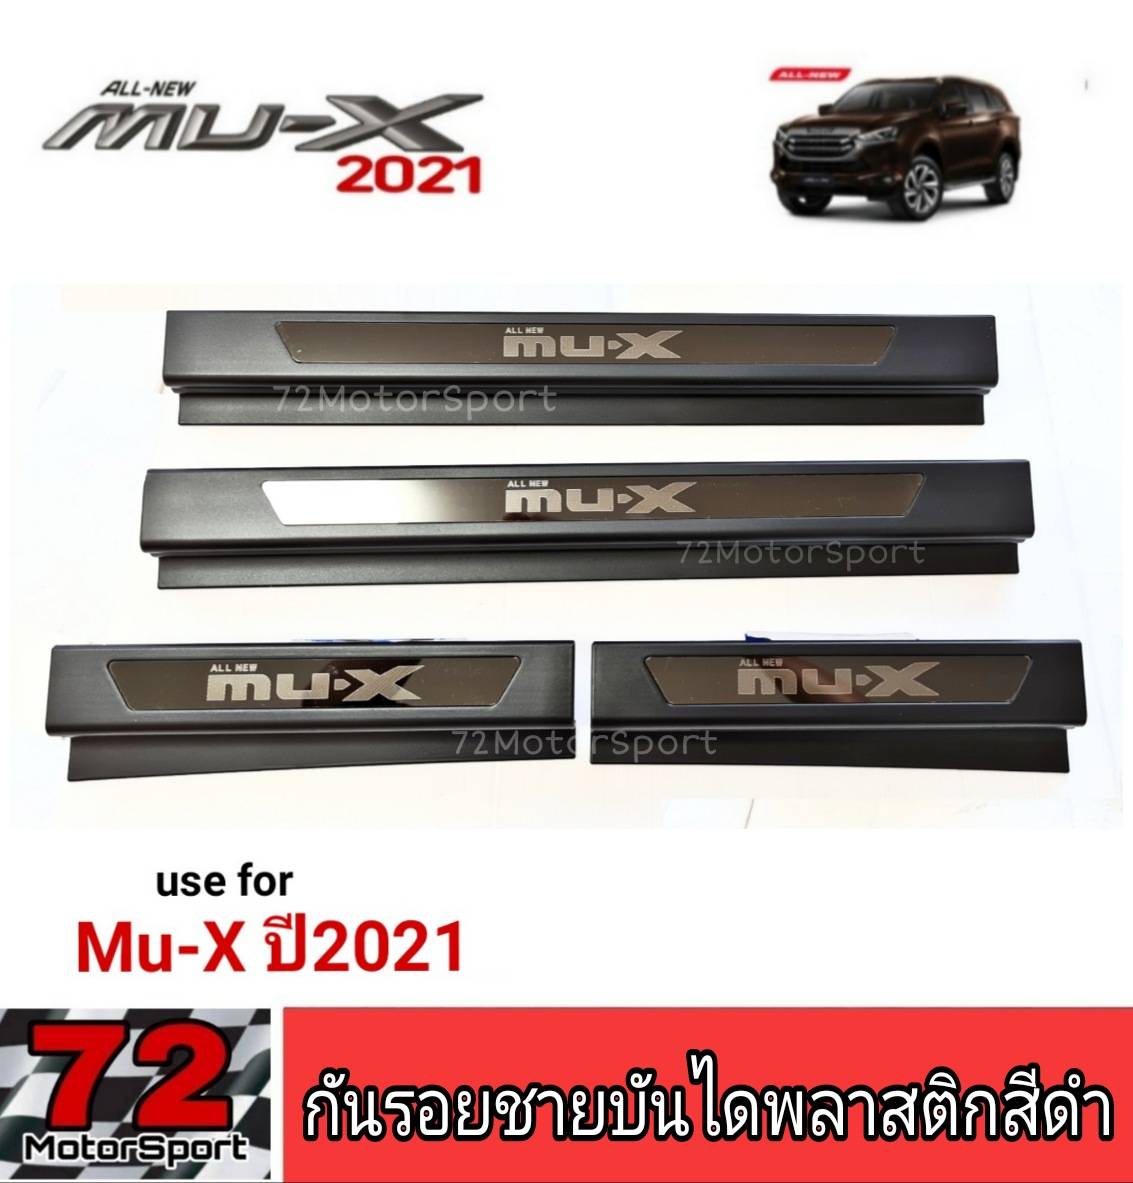 กันรอยชายบันไดสีดำโลโก้อะคริลิค Isuzu Mu-x ปี2021 ของแต่งมิวเอ็กซ์ isuzu mux2021 กันรอยmux2021 ของแต่งmux อุปกรณ์กันรอยmux อีซูซุมิวเอ็กซ์ มิวเอ็กซ์2021